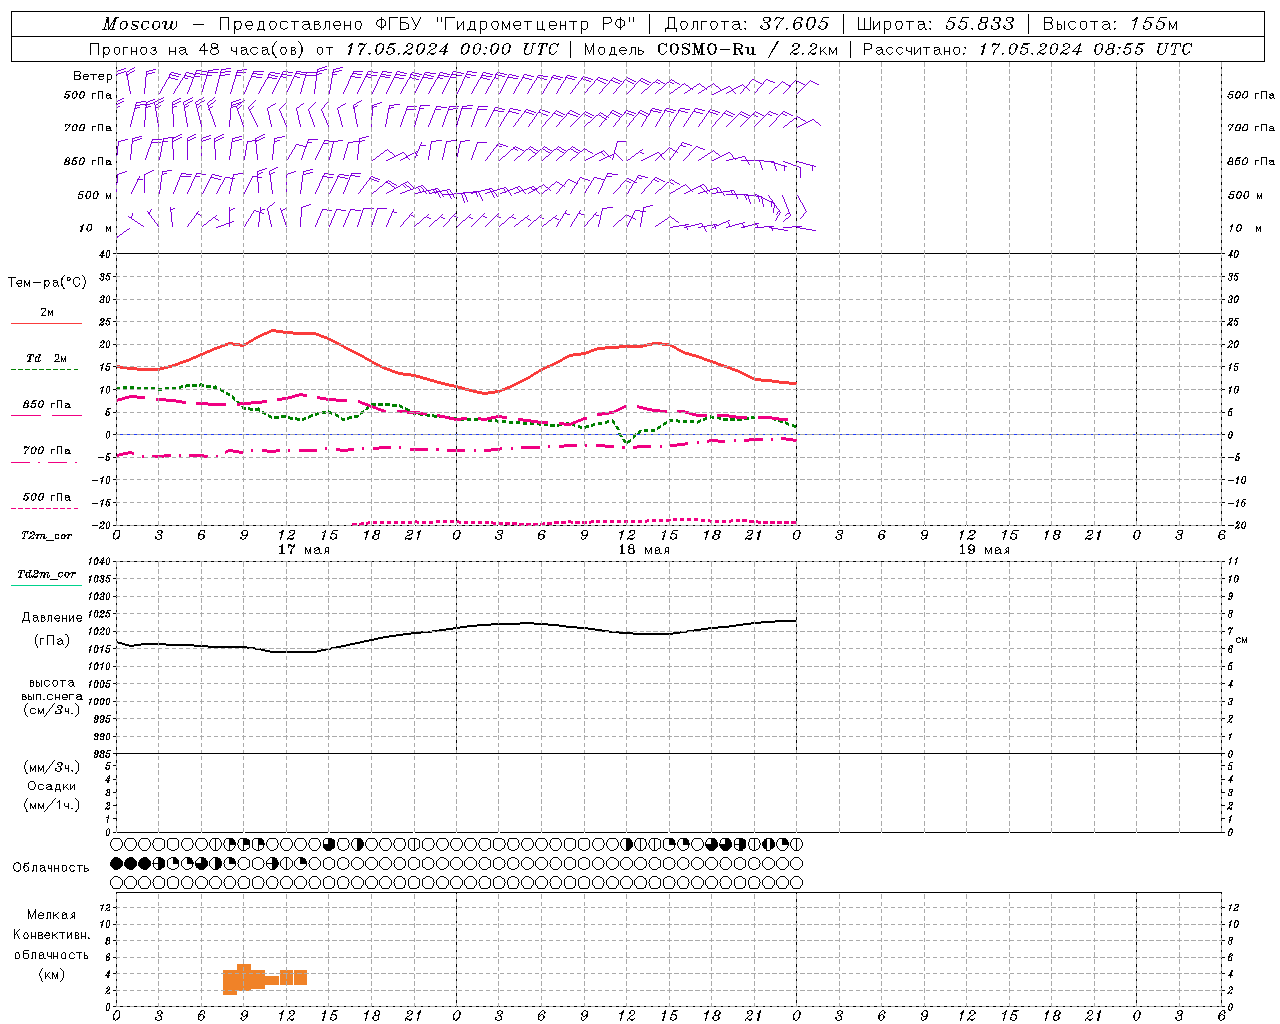 Прогнозы погоды по пунктам (метеограммы) модели COSMO